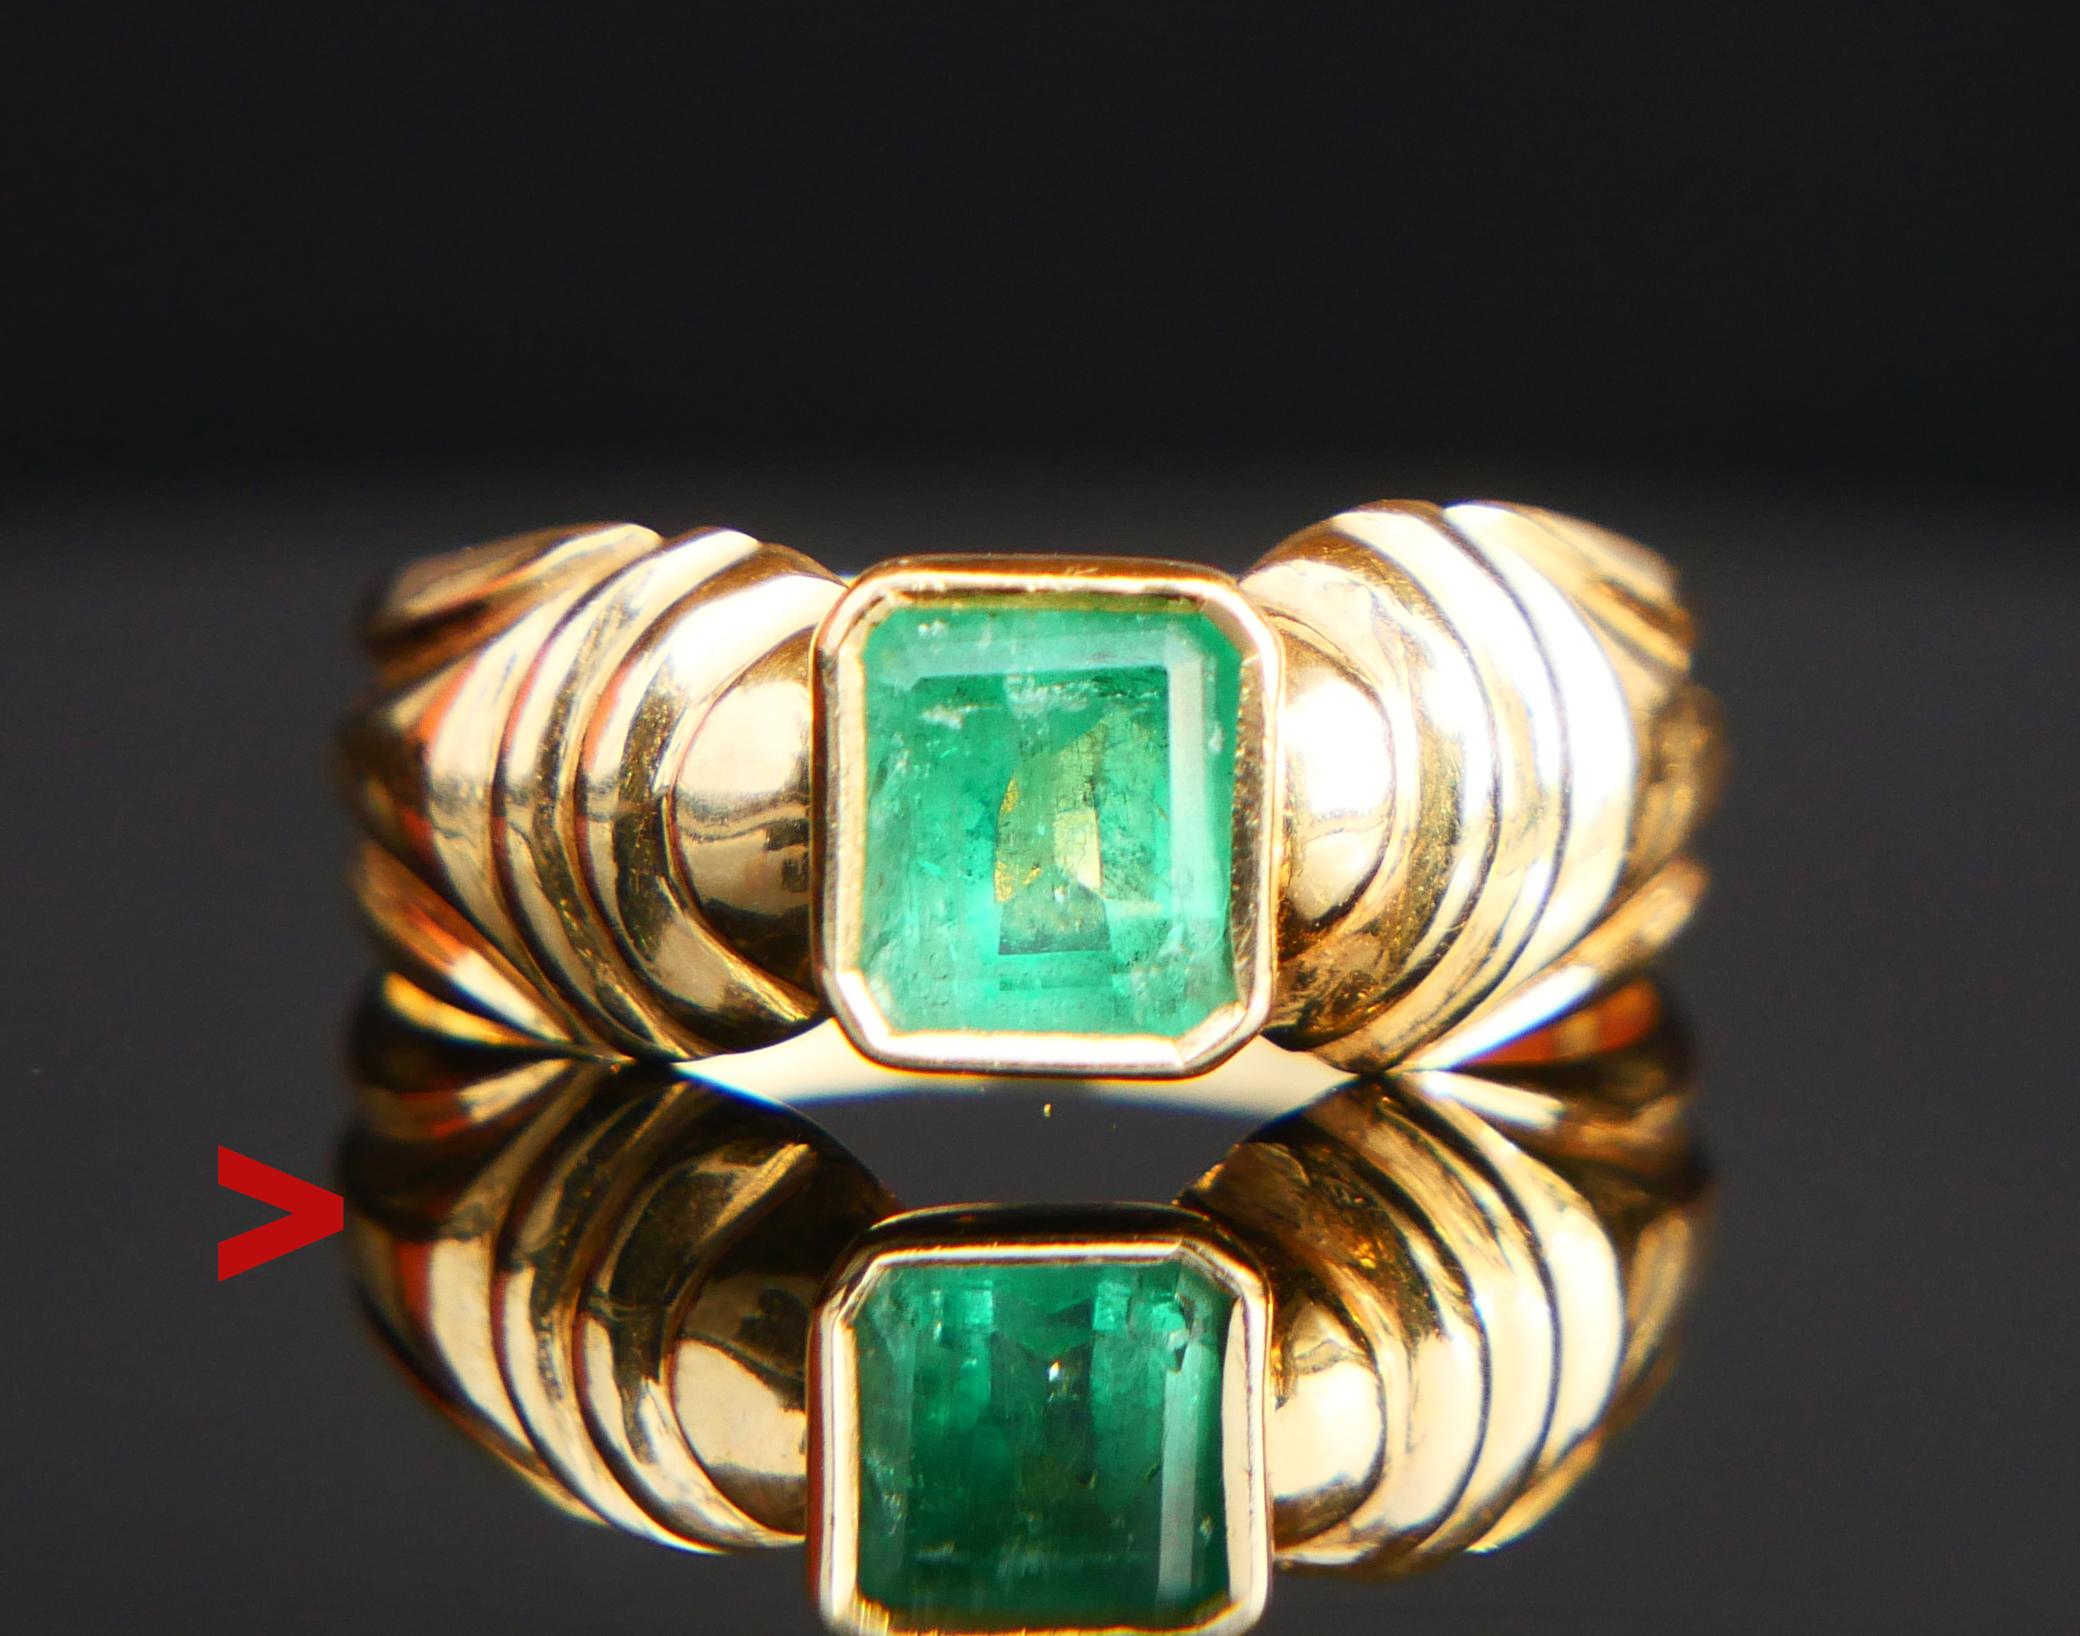 Eleganter Vintage Smaragd Ring, die geschnitzte Band in massivem 18ct Gelbgold + Lünette gesetzt natürlichen Smaragd Schliff Smaragd Stein von tief / starke grüne Farbe 6 mm x 5 mm x 3,75 mm tief / ca. 0,85 ct

Gepunzt 18K. Größe: Ø 7US / 17,35 mm.